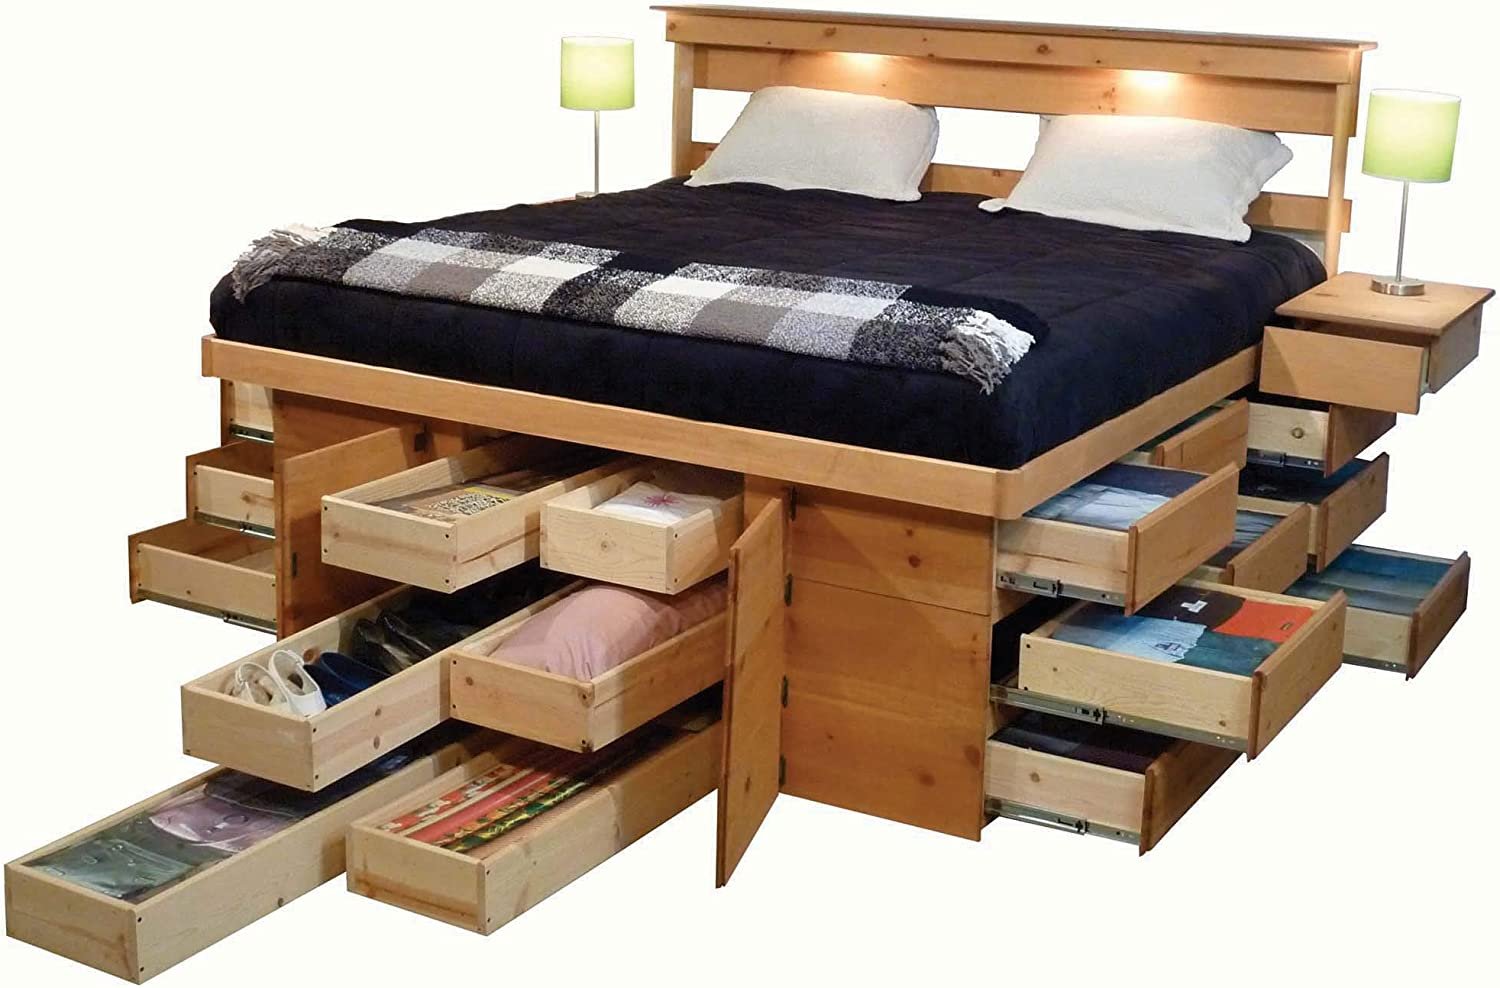 Кровать со встроенными ящиками